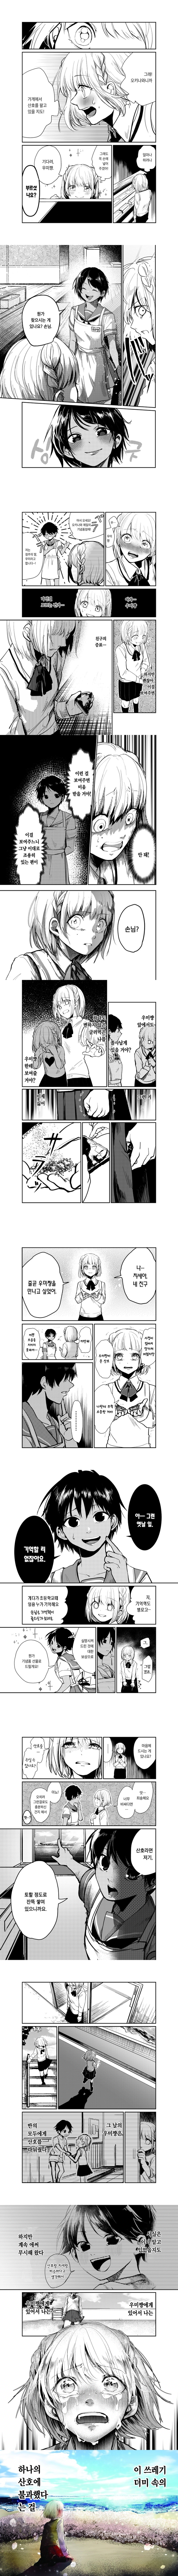 오키나와로 전학간 소꿉친구와 재회하는.Manga